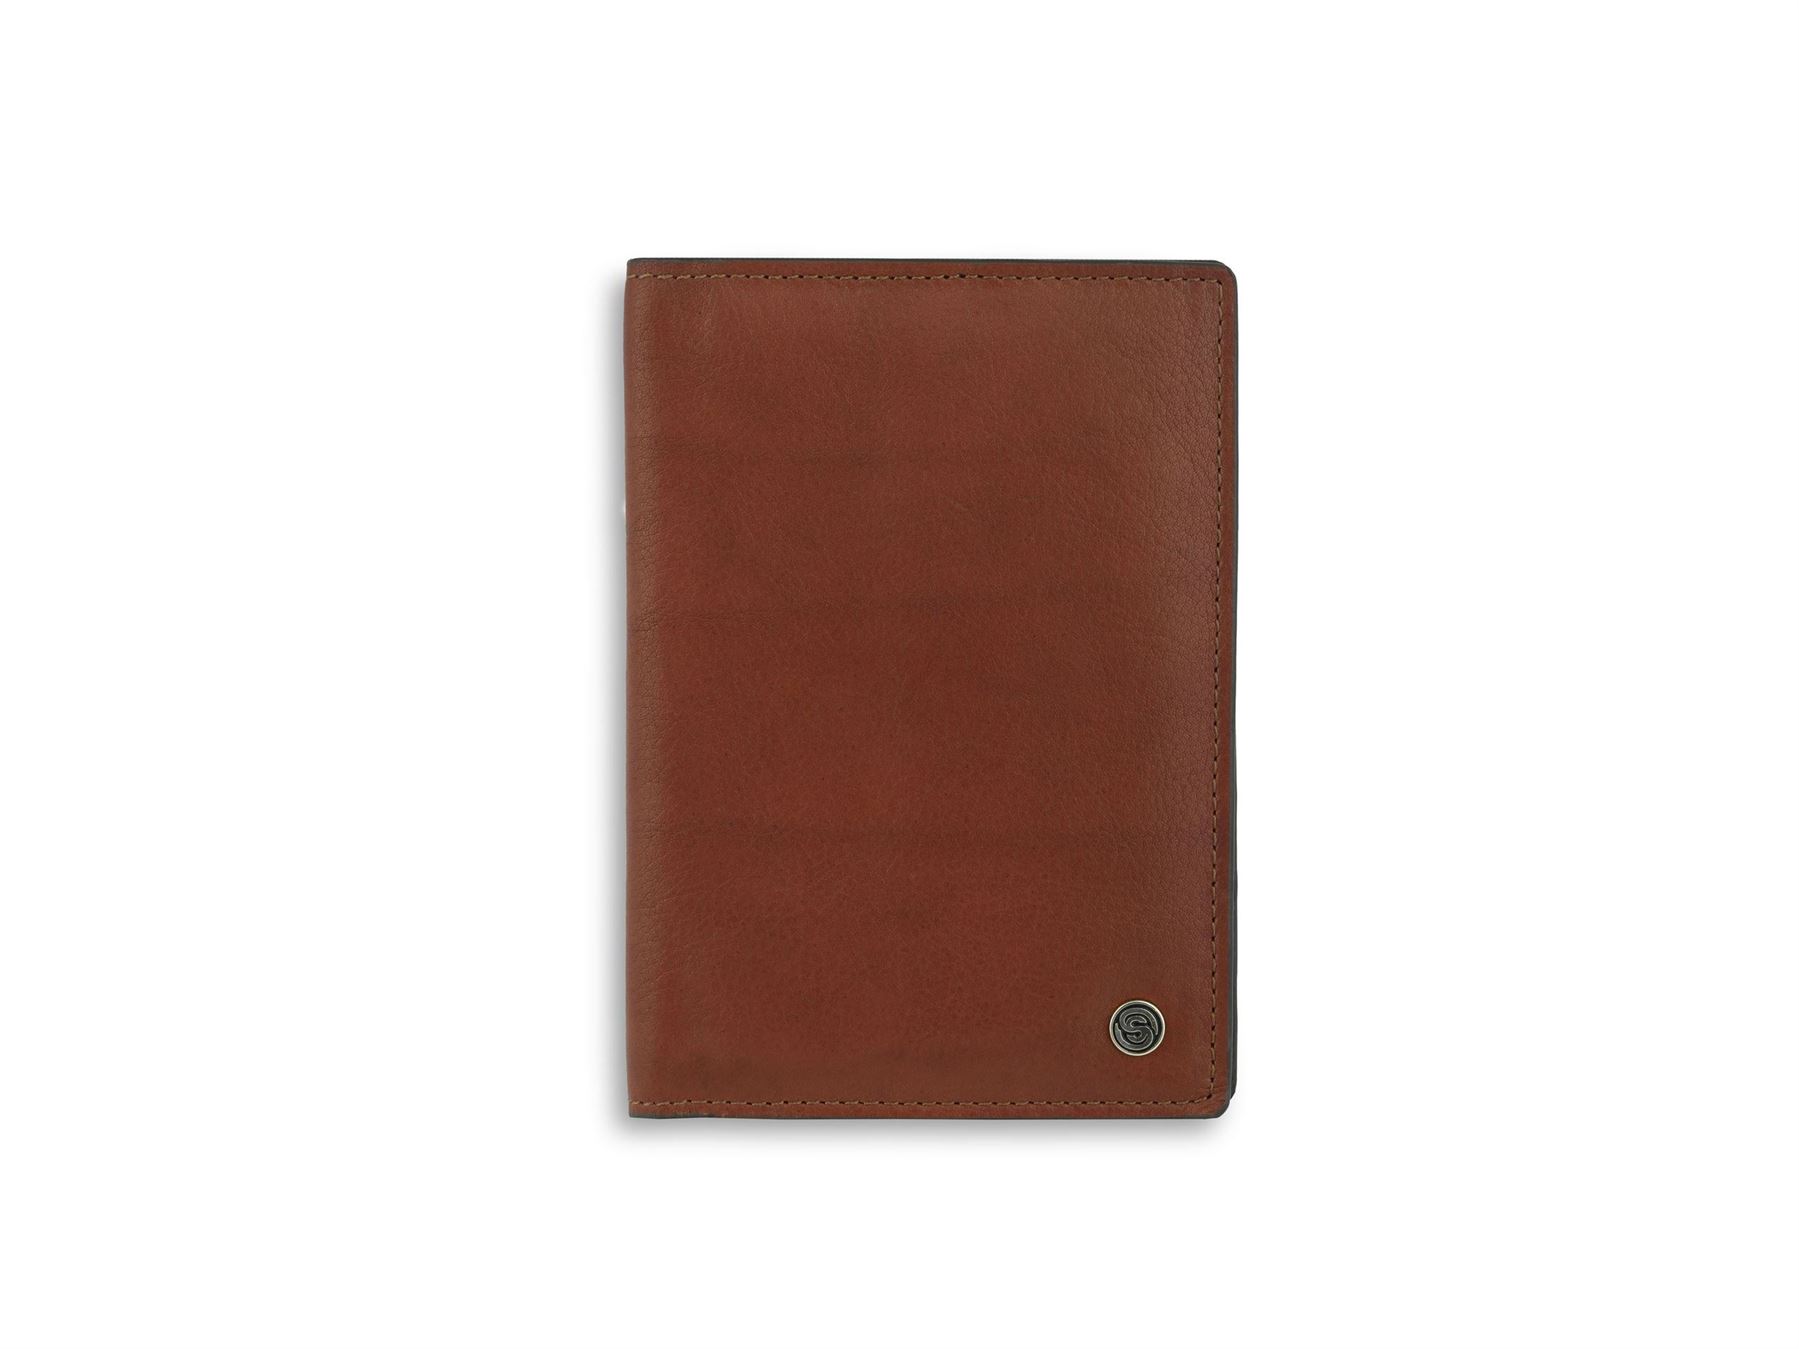 Dubbin Tan Leather Passport Cover